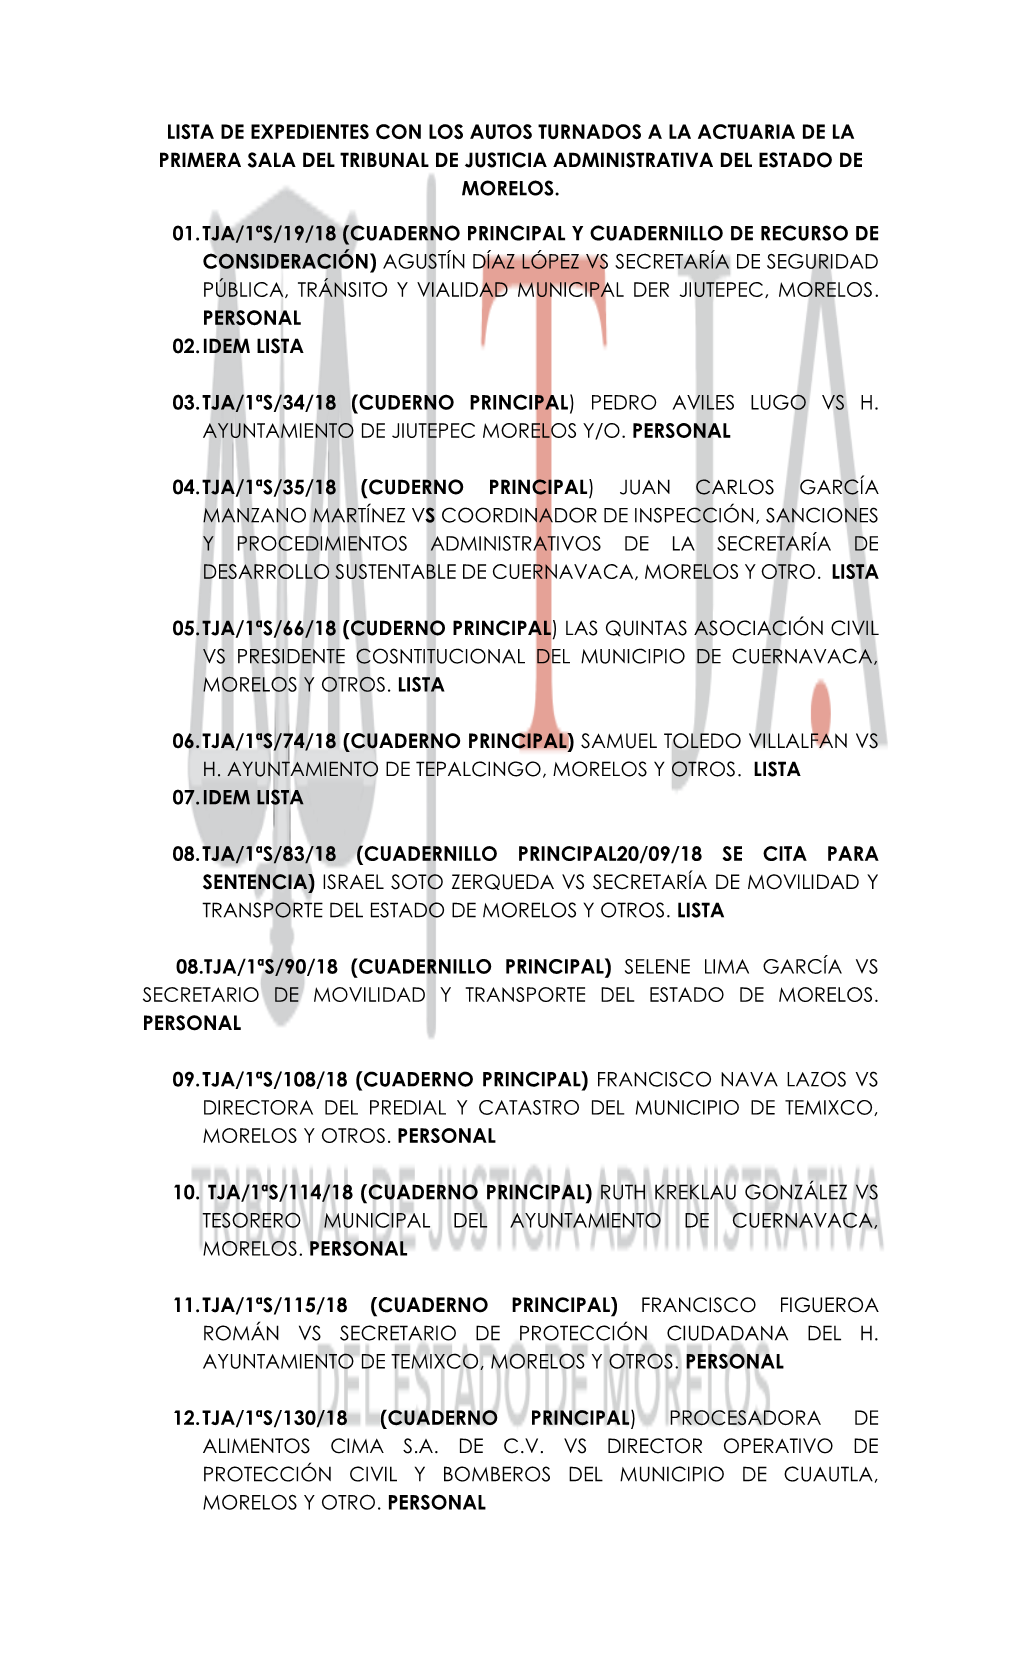 Lista De Expedientes Con Los Autos Turnados a La Actuaria De La Primera Sala Del Tribunal De Justicia Administrativa Del Estado De Morelos